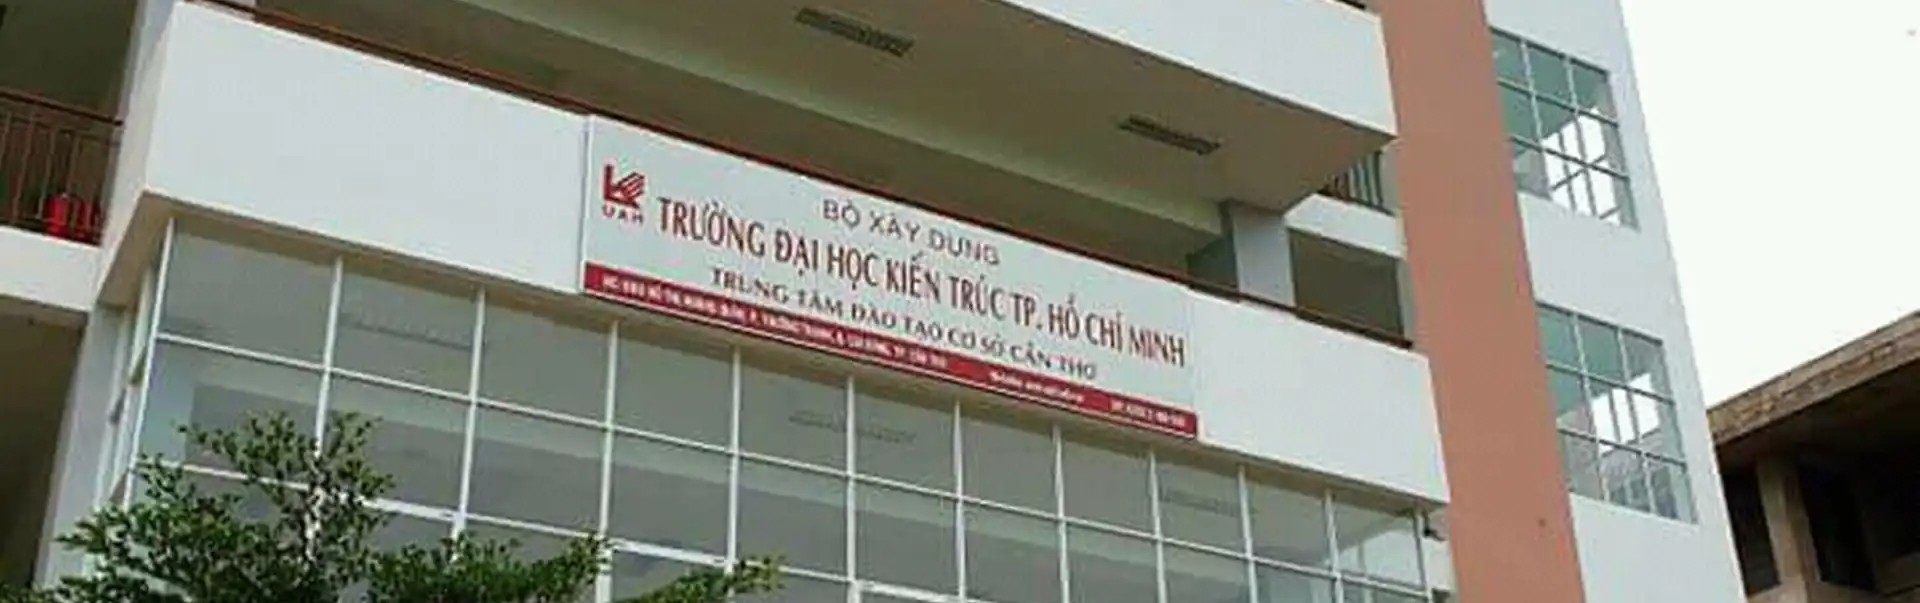 Đại học Kiến trúc Thành phố Hồ Chí Minh (Cơ sở Cần Thơ)